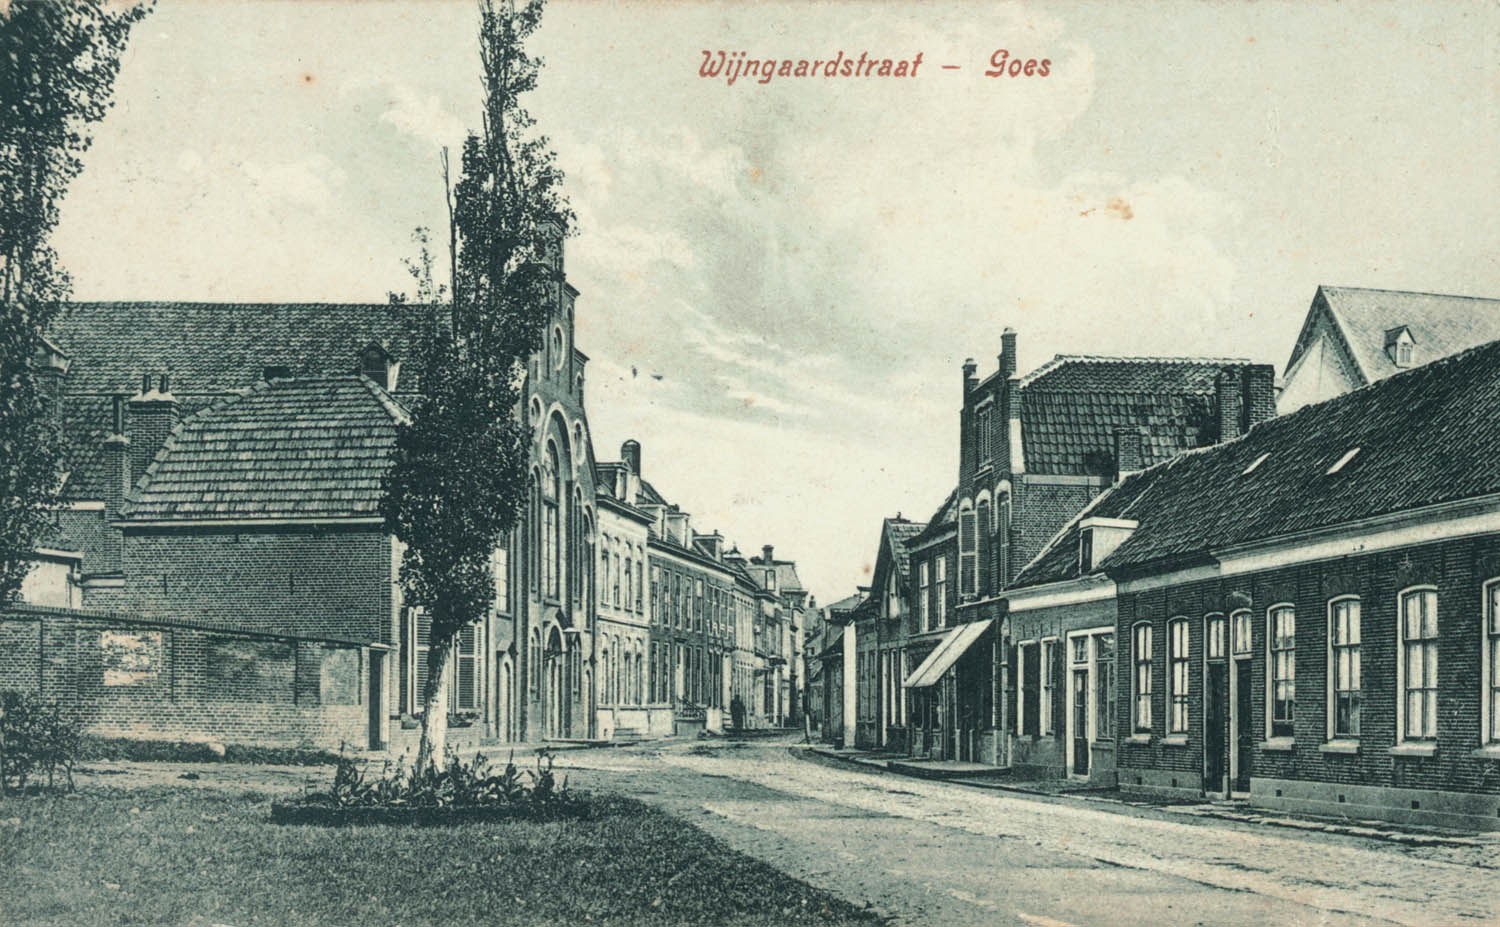 De Wijngaardstraat, waar diverse brouwerijen waren gevestigd, ca. 1920.